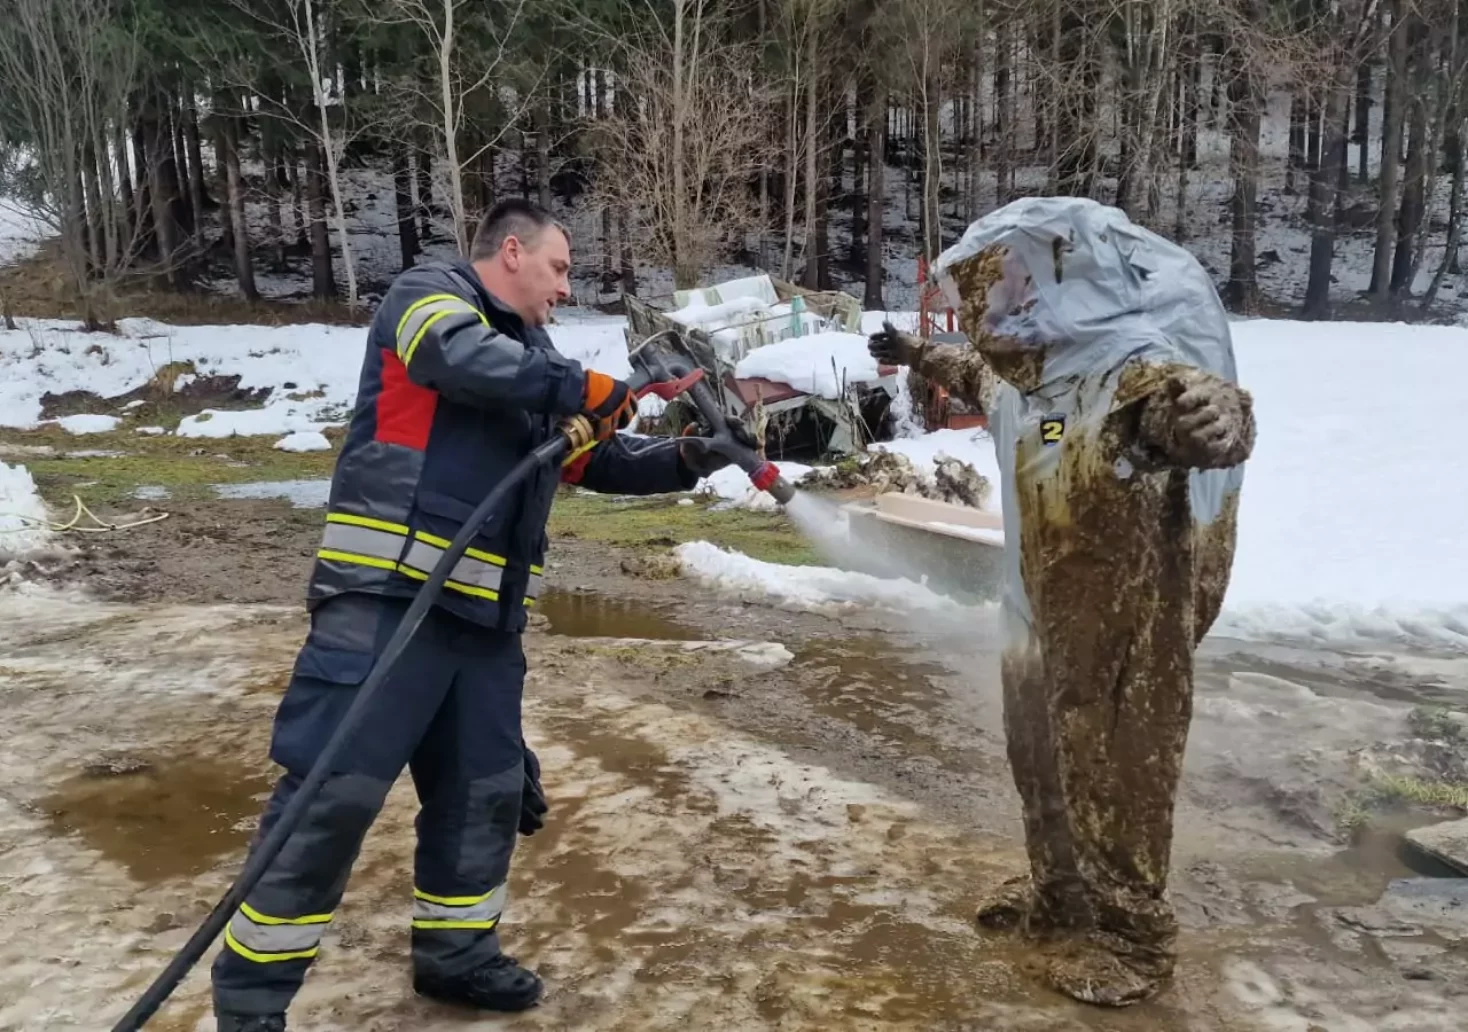 Bild auf 5min.at zeigt den Feuerwehr-Einsatz zur Tierrettung eines neugeborenen Kalbs.